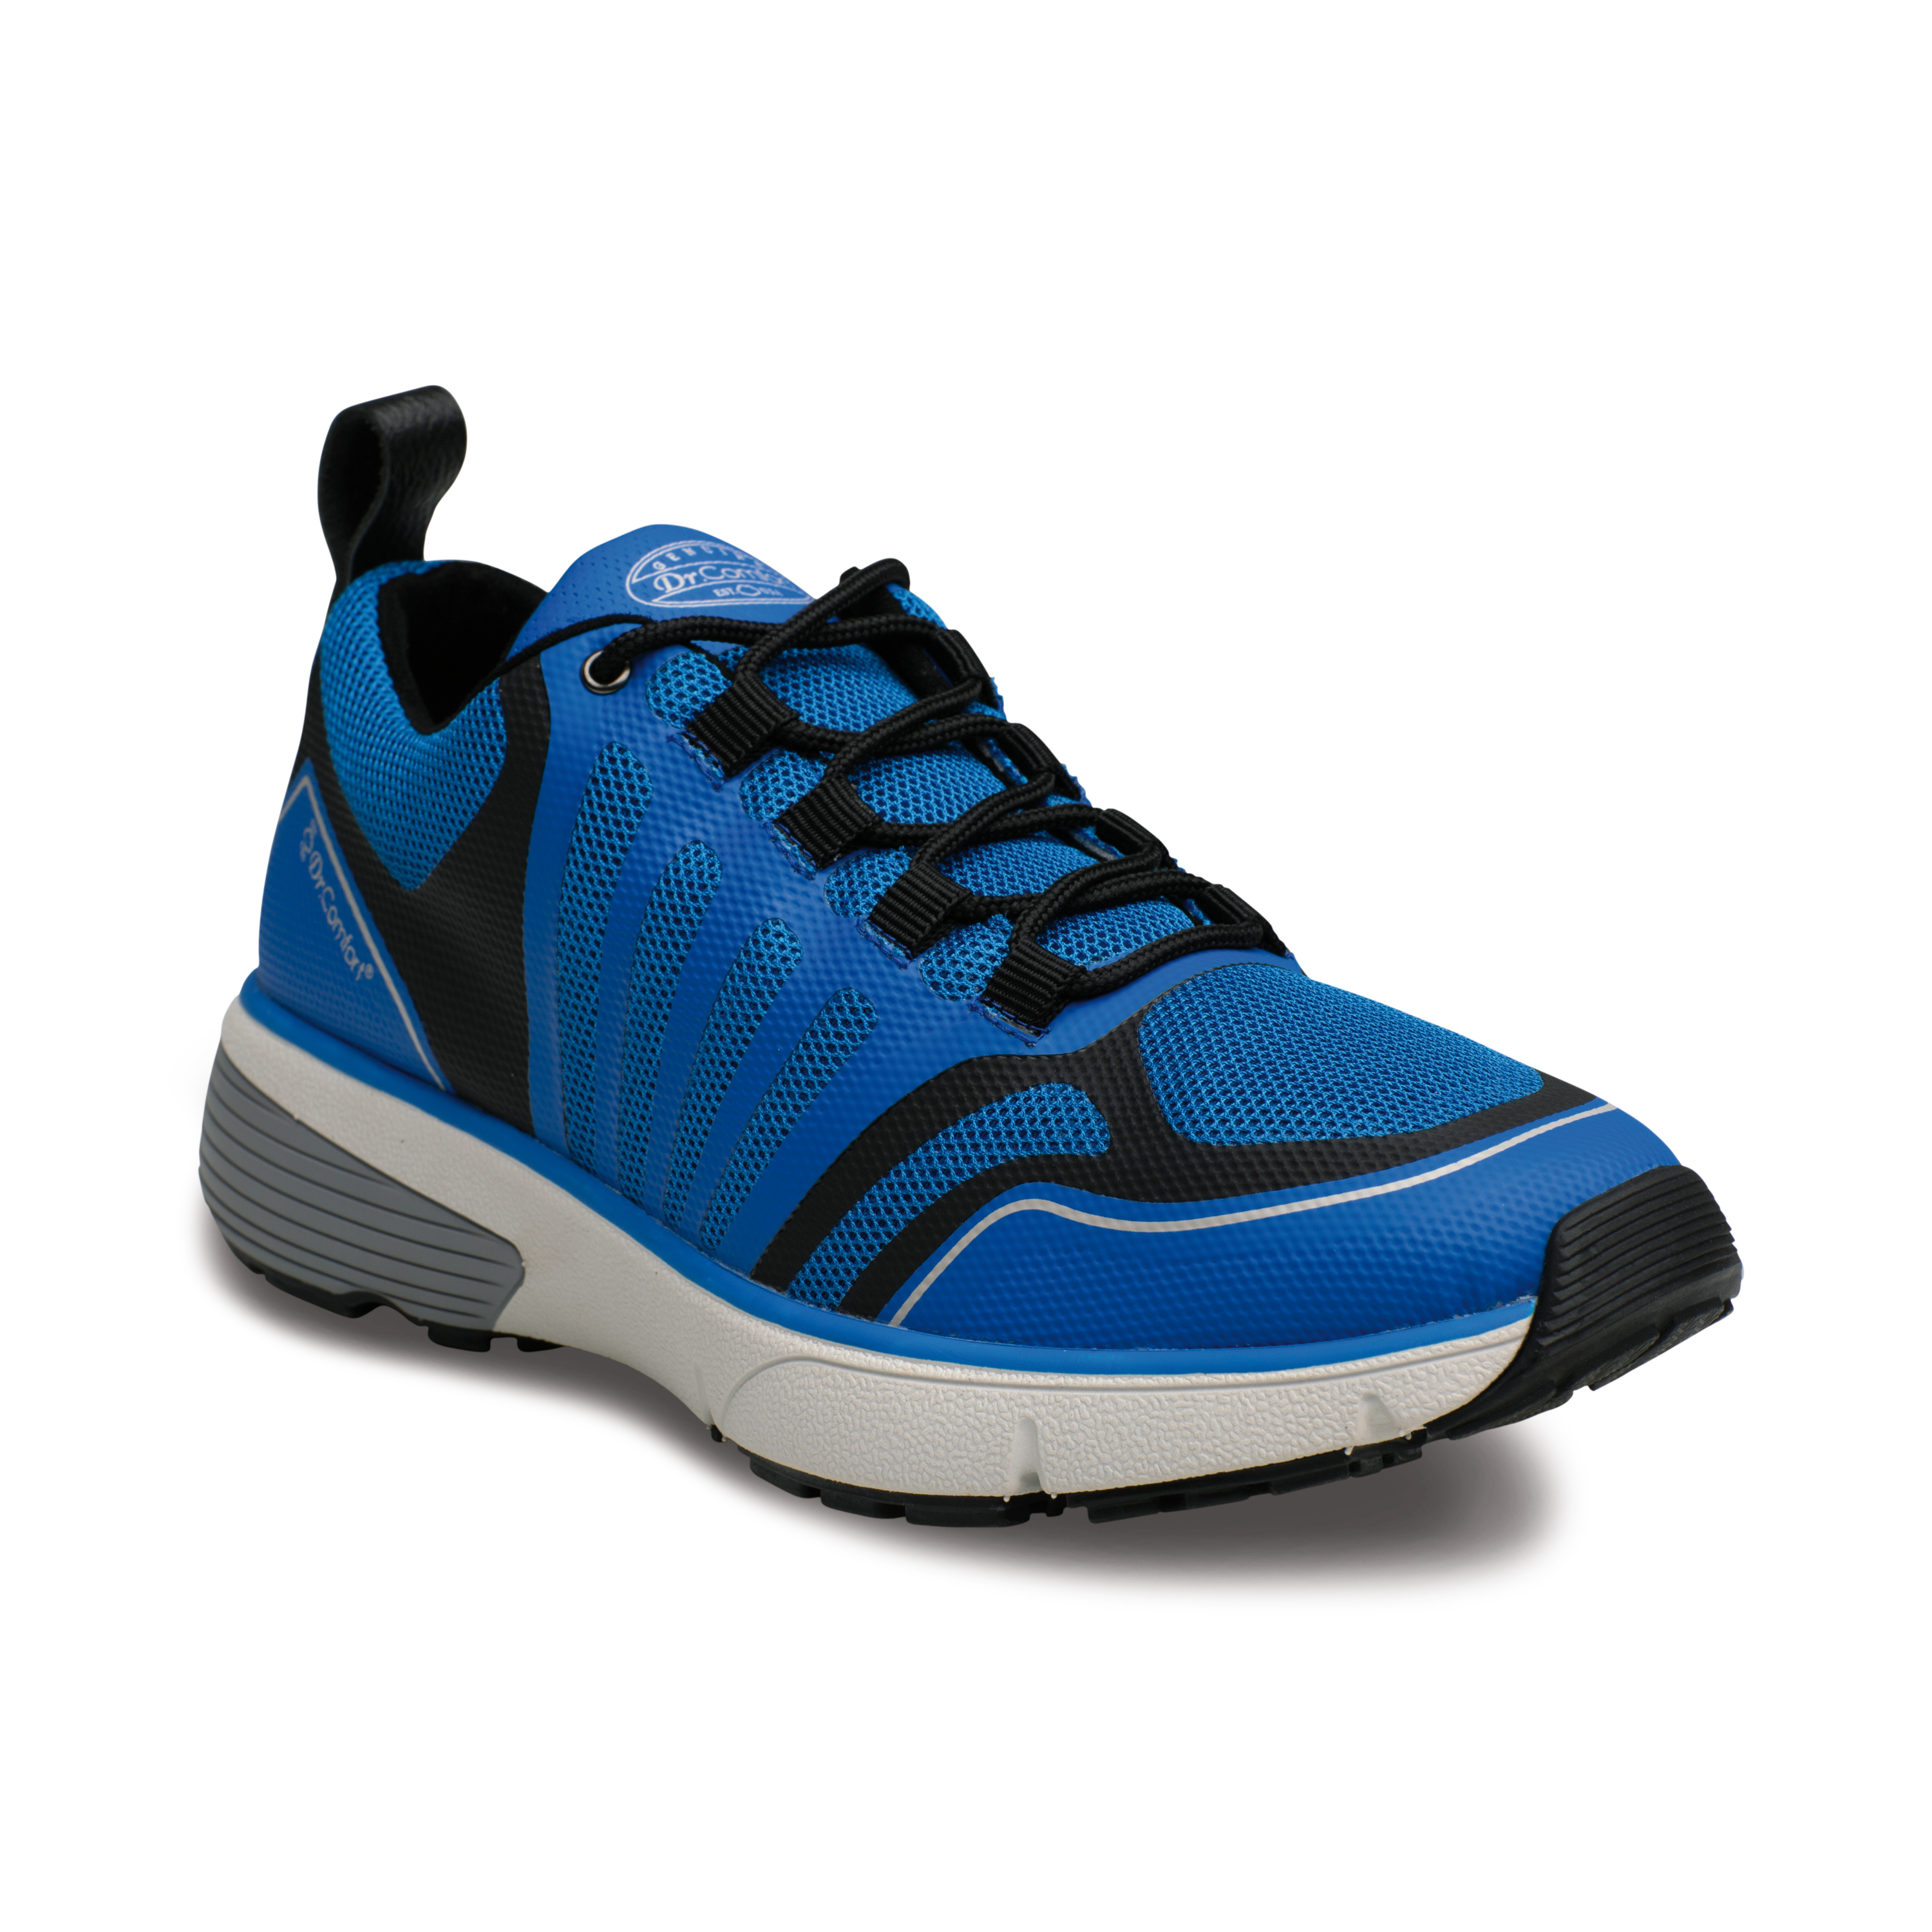 Produktbild DR. COMFORT® Gordon blau, Orthopädische Schuhe, Leichter Aktivschuh mit stabilisierender und dämpfender Laufsohlenkonstruktion für einen sicheren Gang